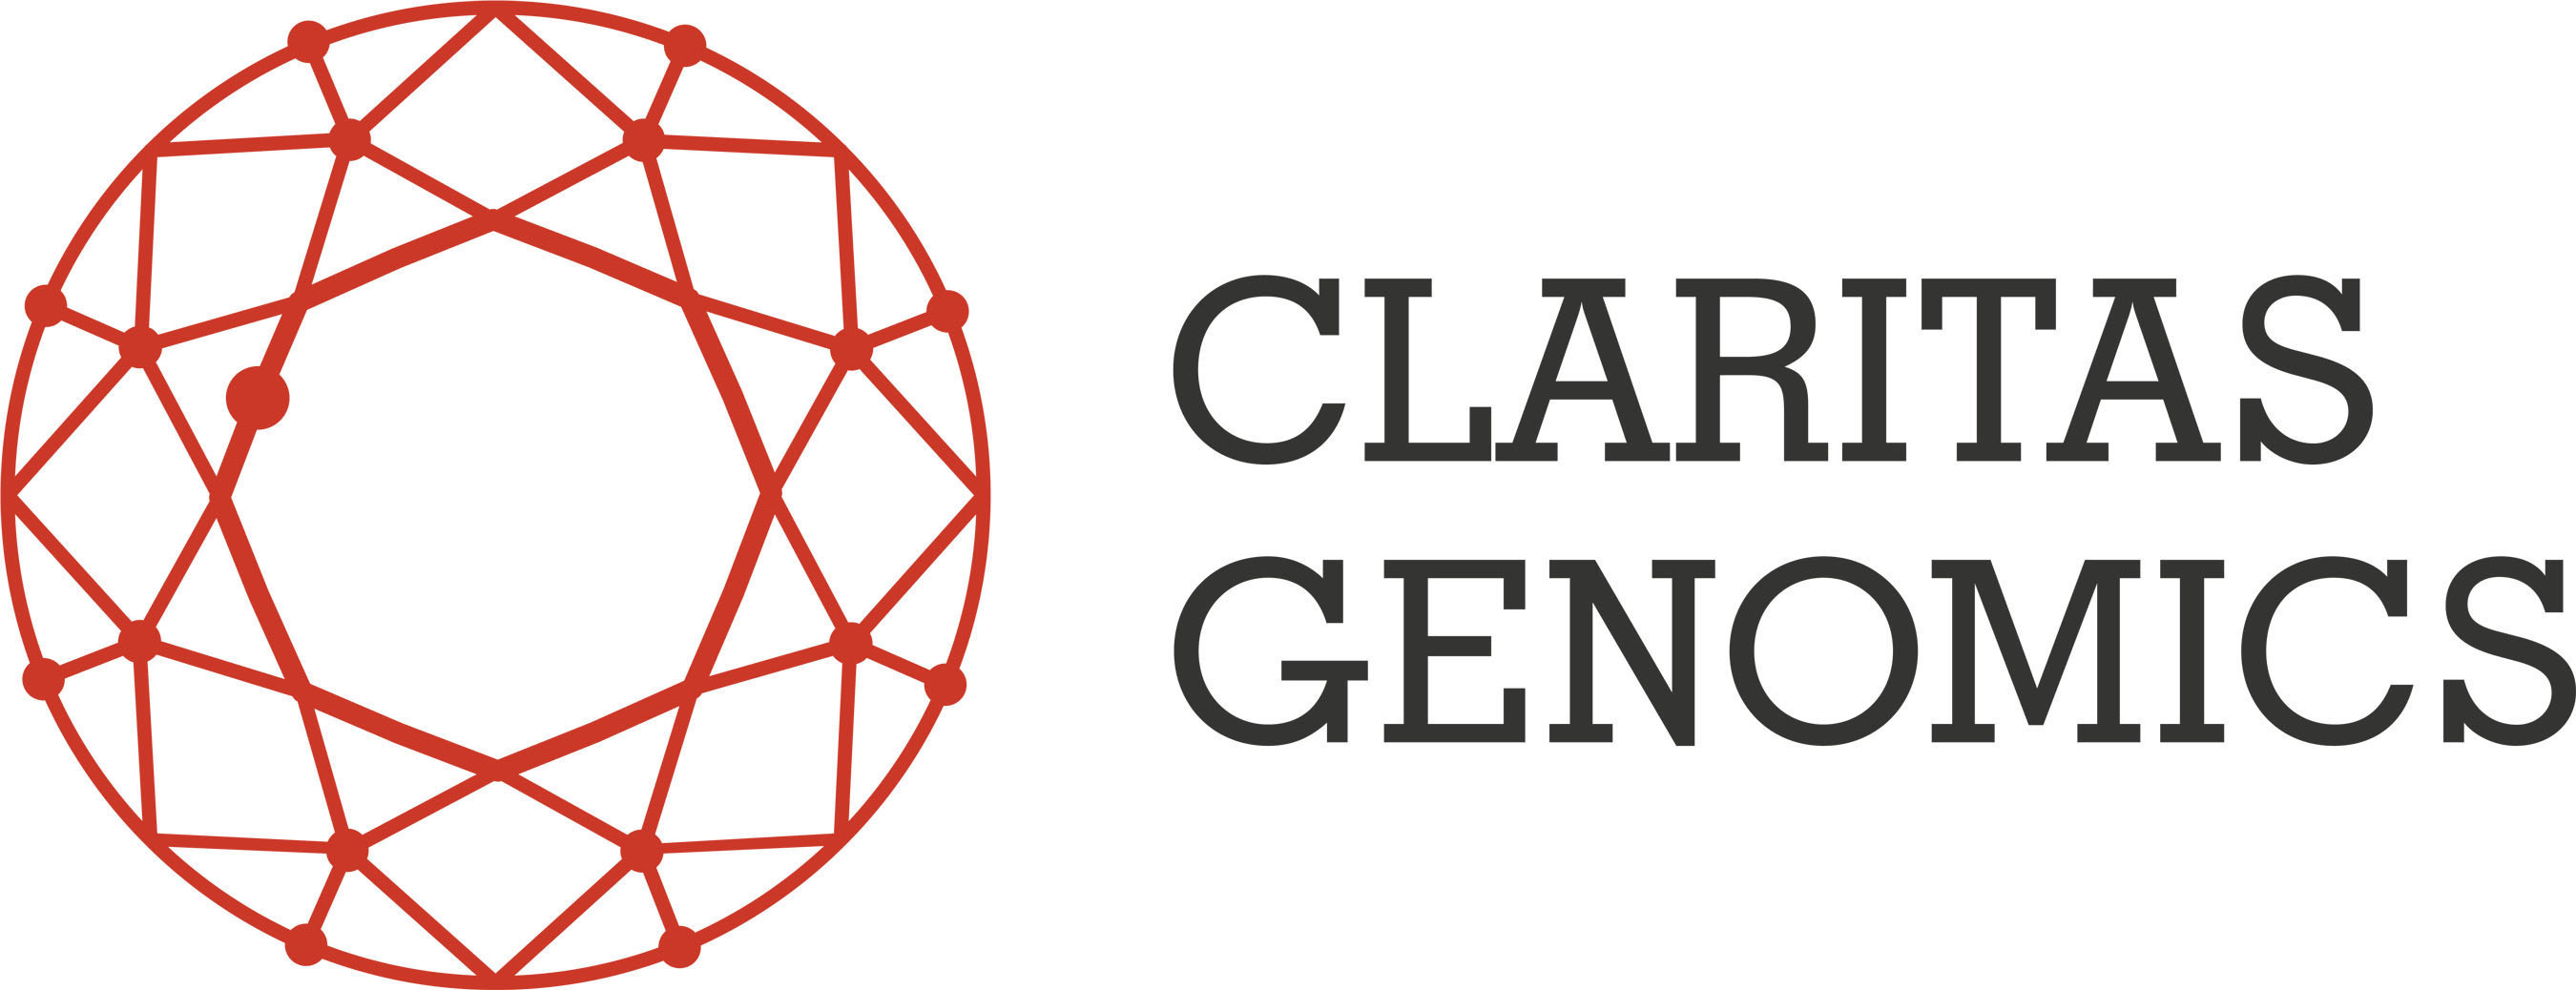 Claritas Genomics